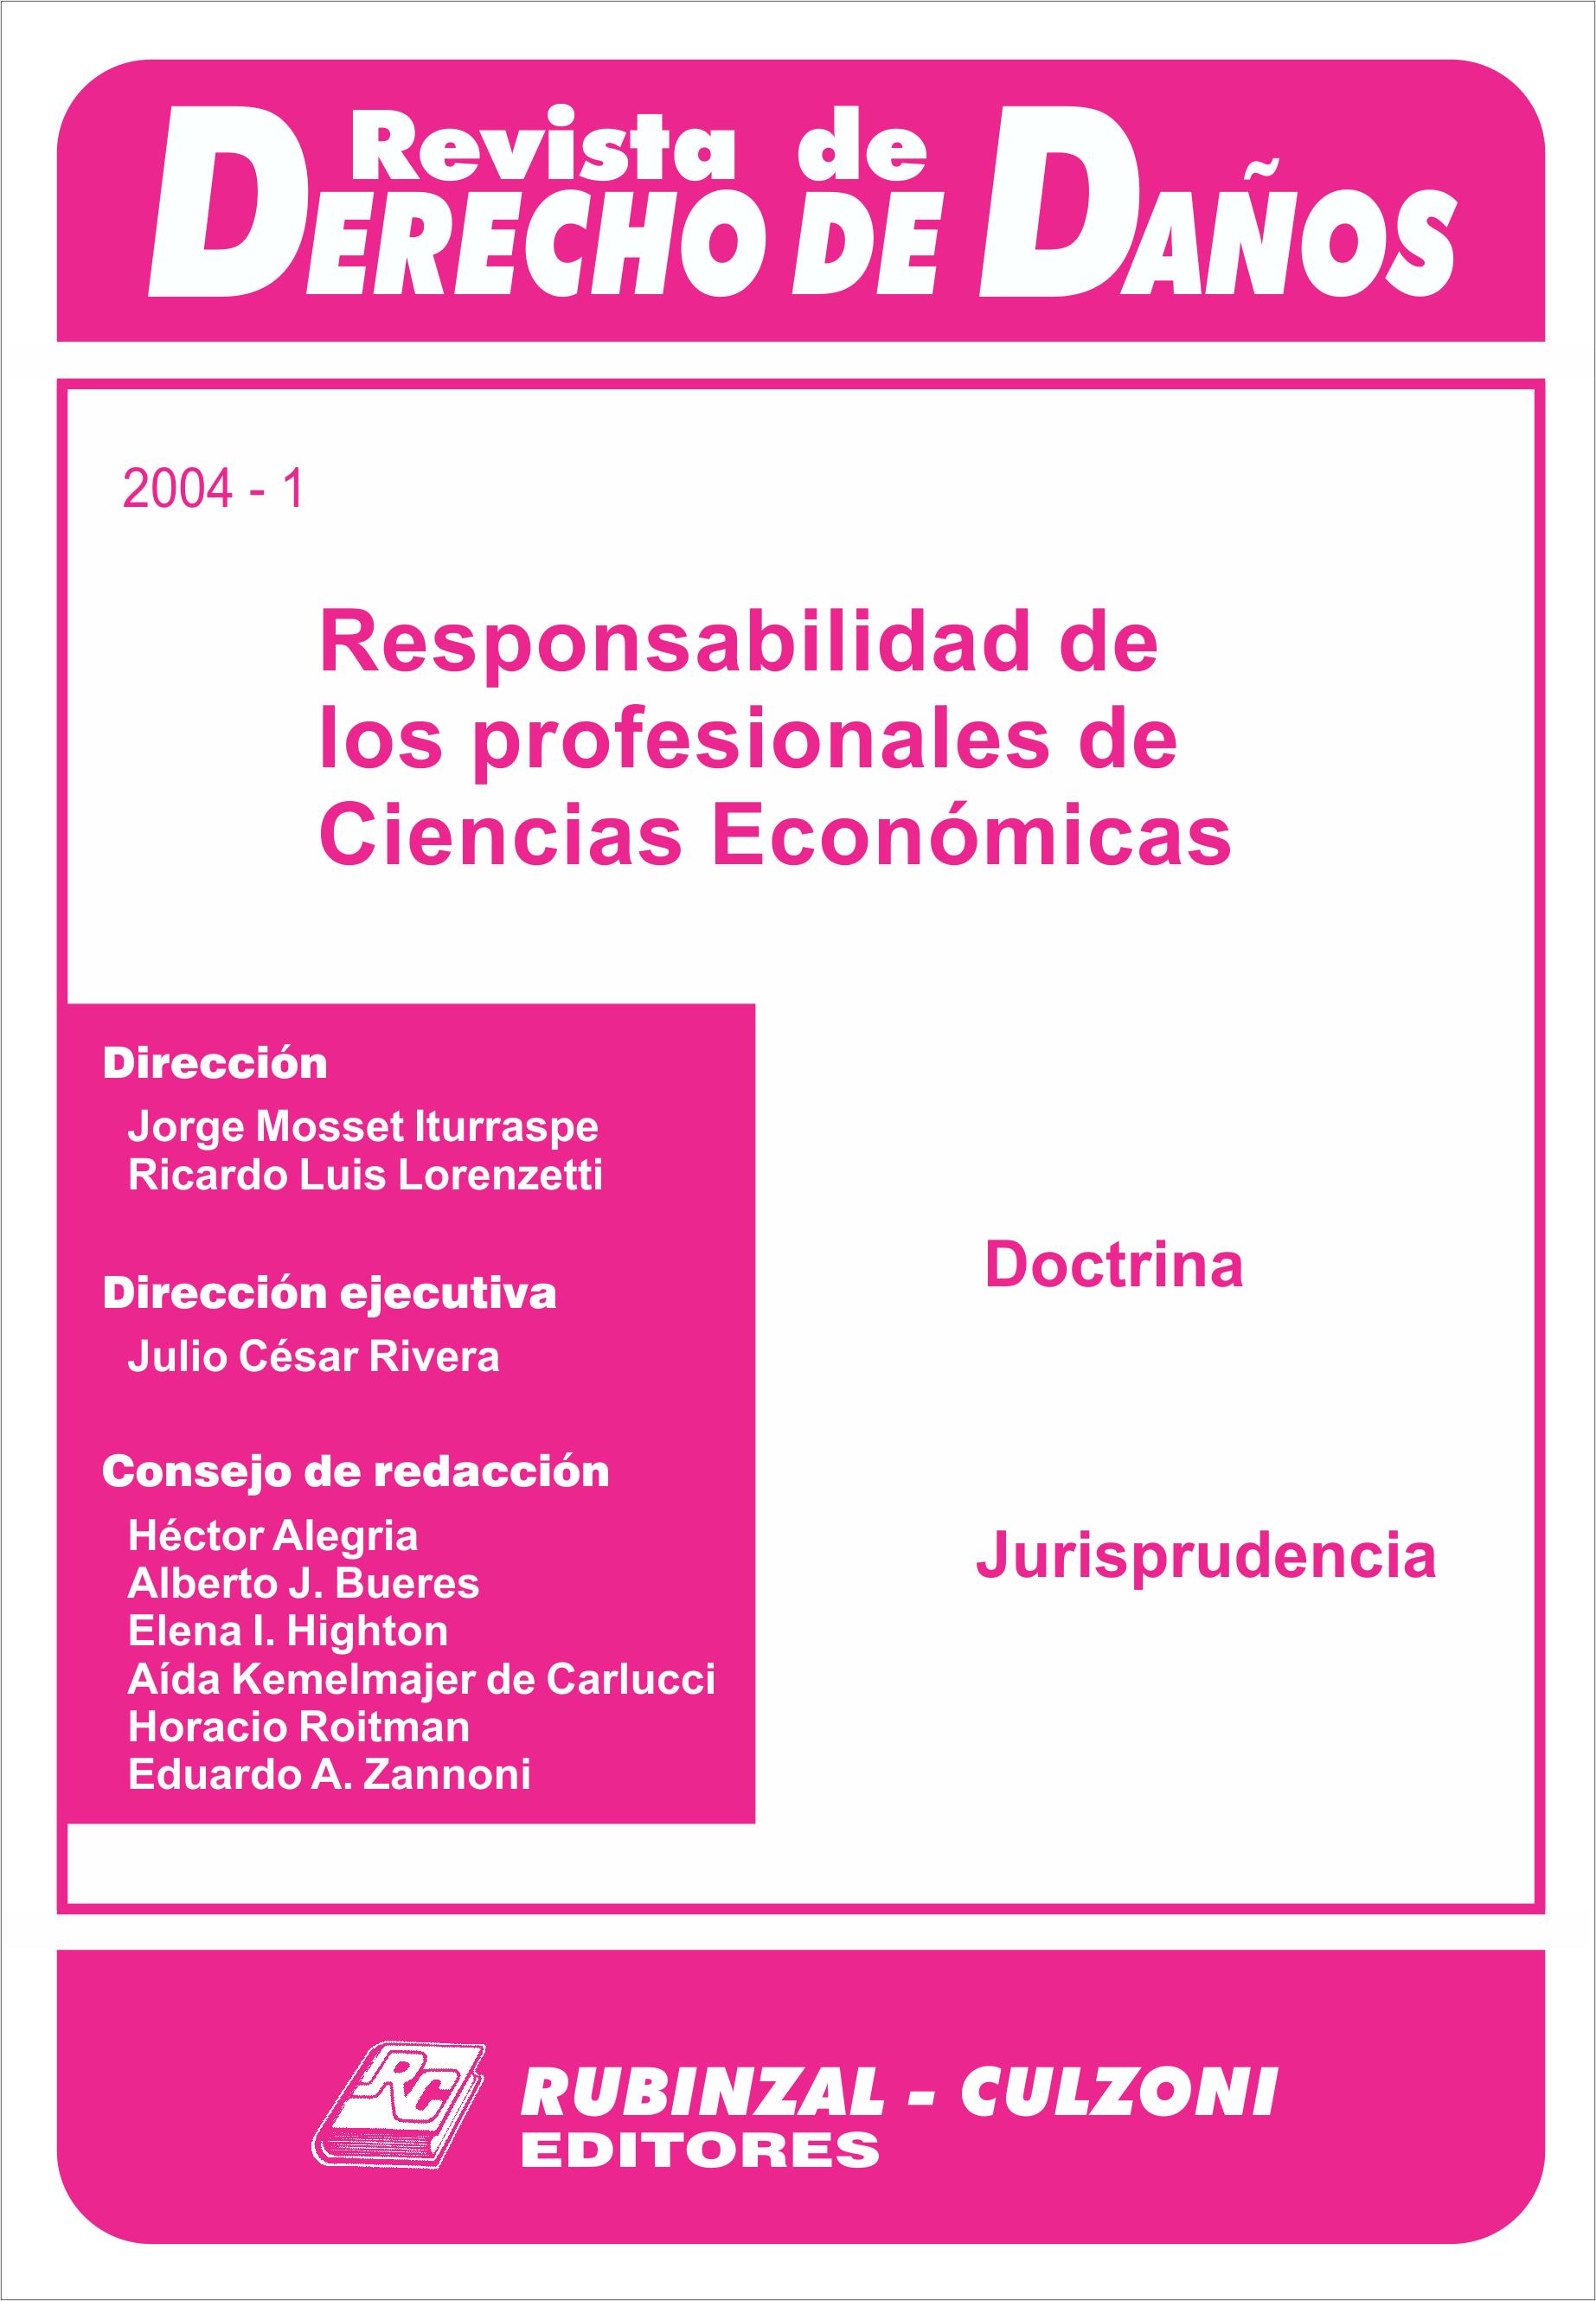 Revista de Derecho de Daños - Responsabilidad de los profesionales de ciencias económicas